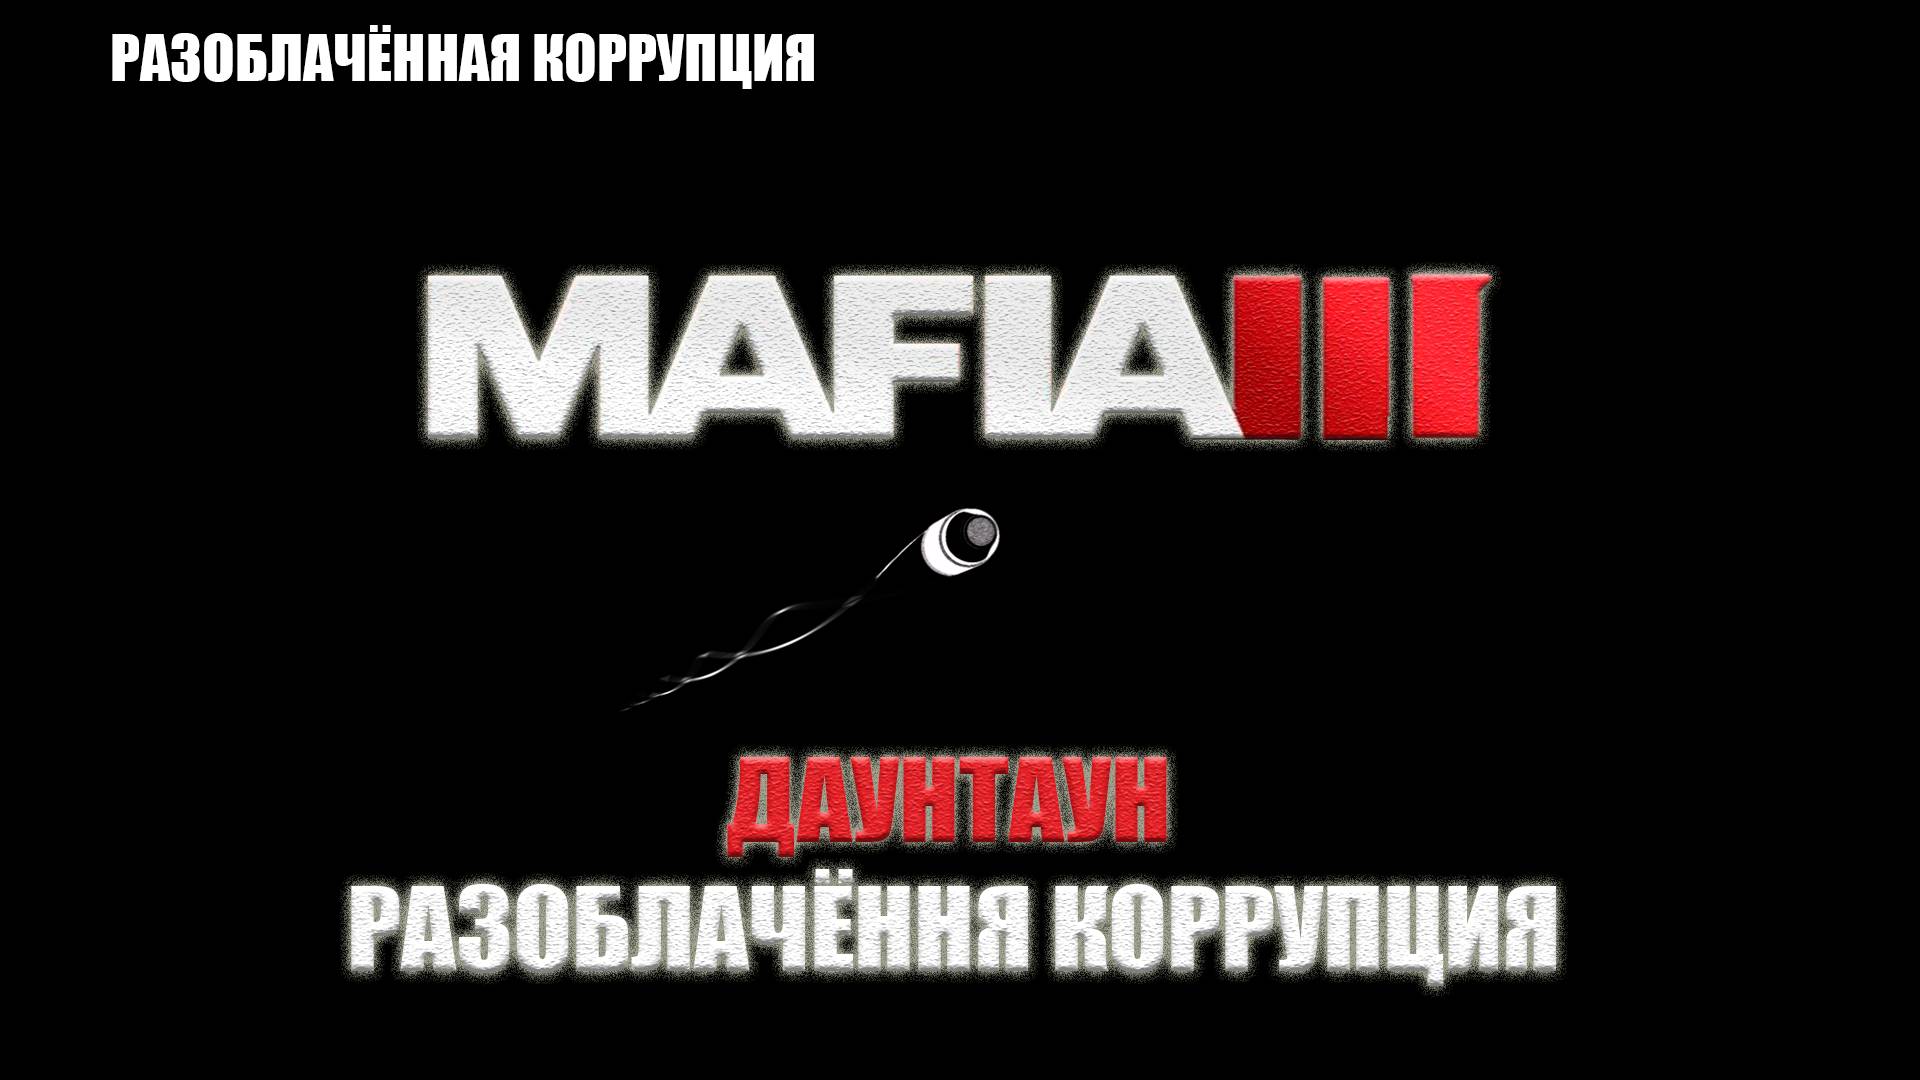 Mafia III - ДАУНТАУН